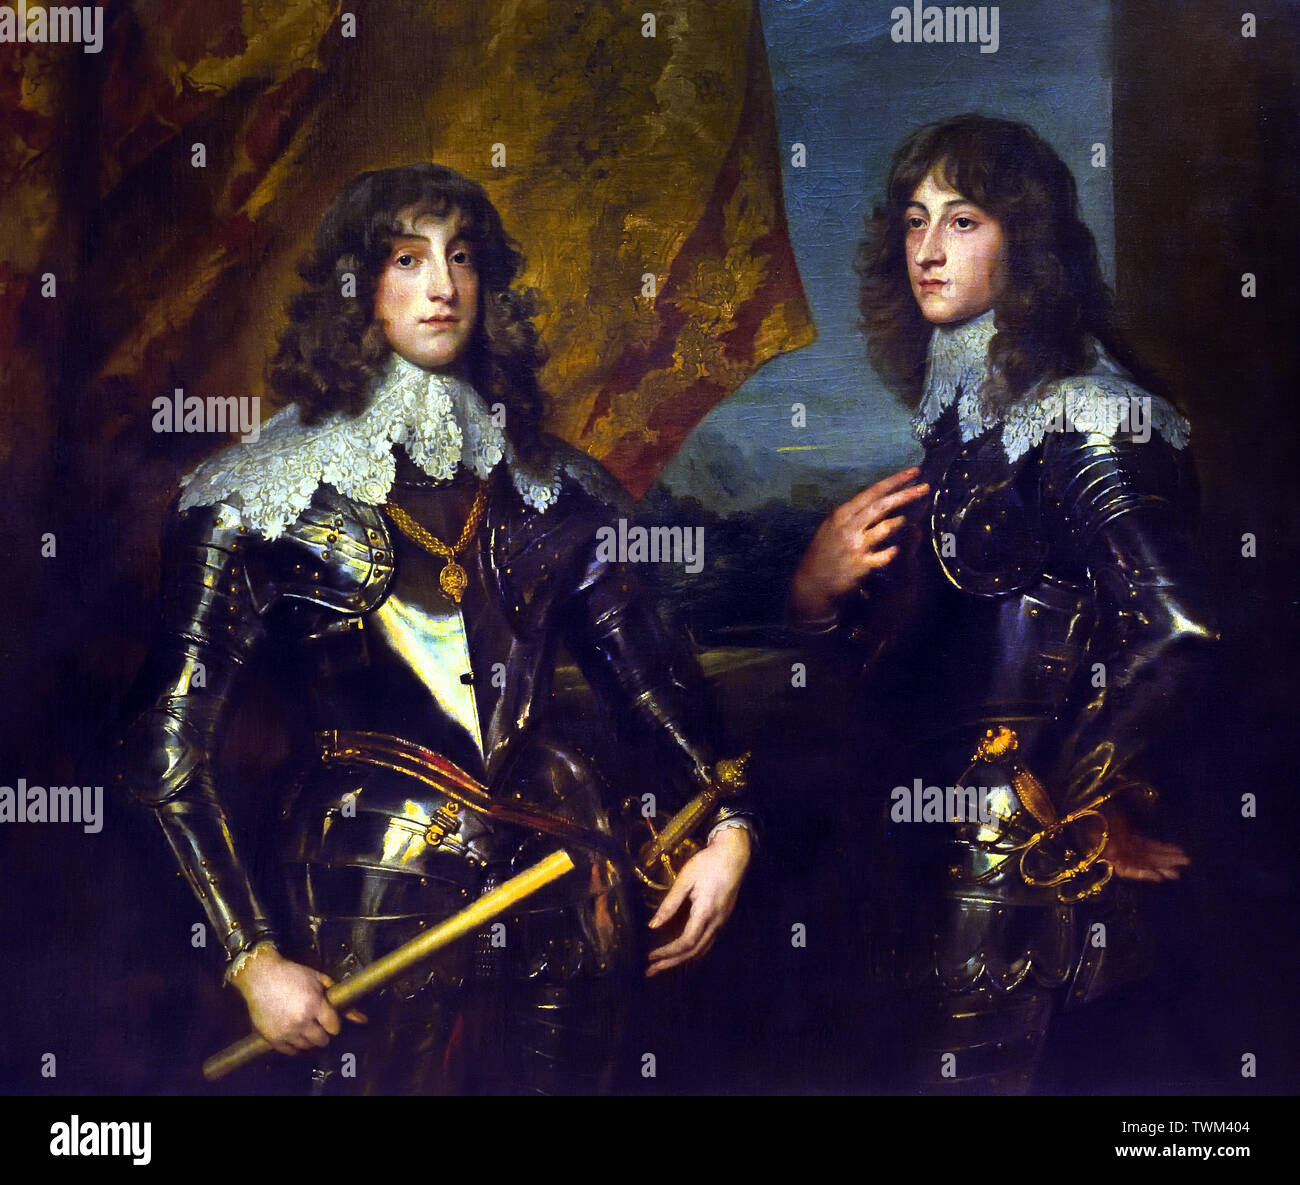 Portrait der Pfälzischen Fürsten Charles Louis I und sein Bruder Robert 1637 von Anthony Antoon Anton van Dyck 1599-1641 Flämisch Belgien Belgische Stockfoto